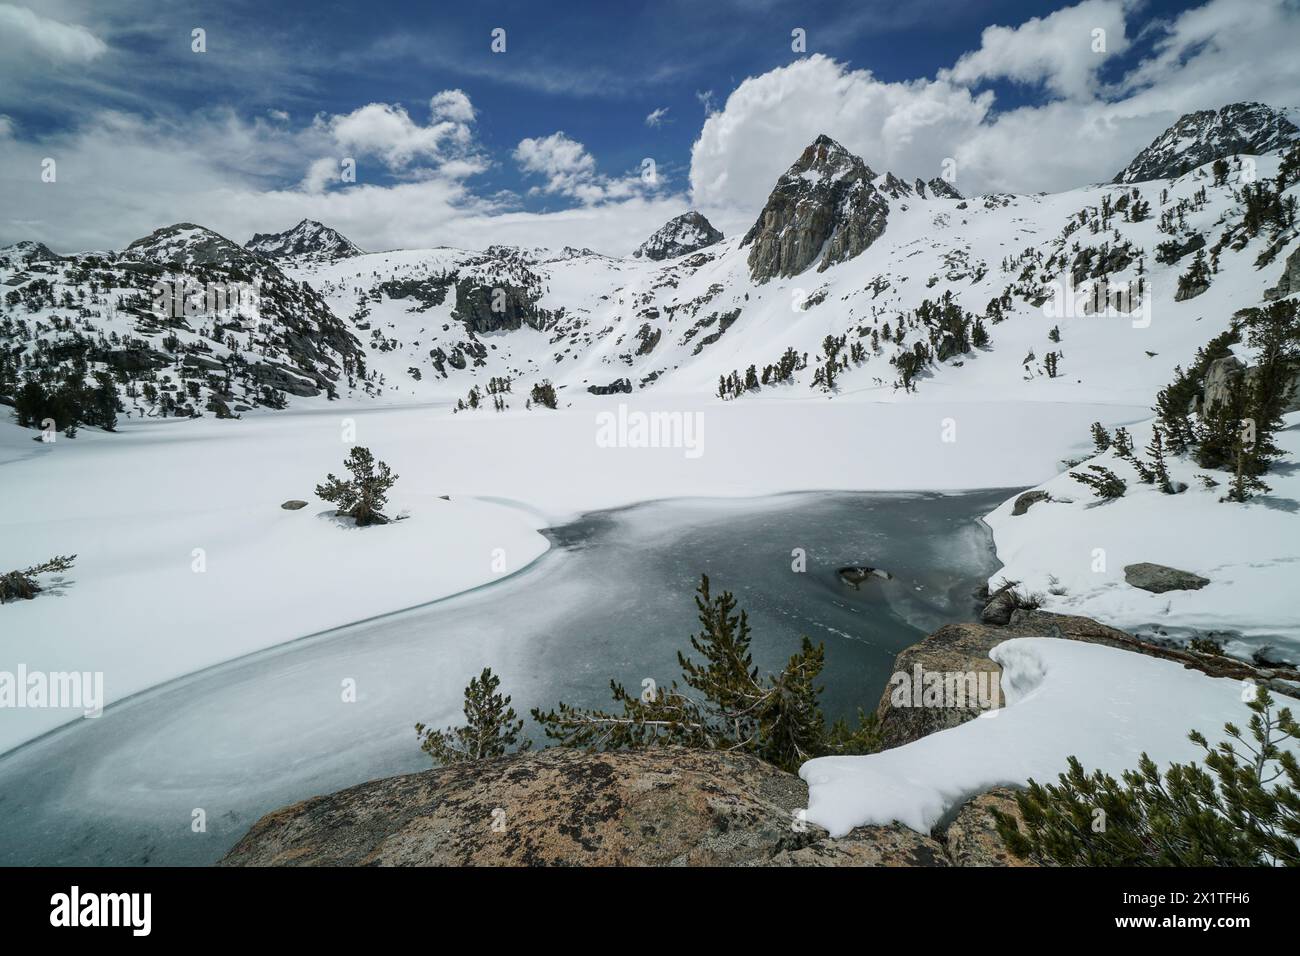 Pacific Crest Trail. Une belle chaîne de montagnes avec un lac au premier plan. Le lac est gelé et entouré de neige. Le ciel est clair et bl Banque D'Images